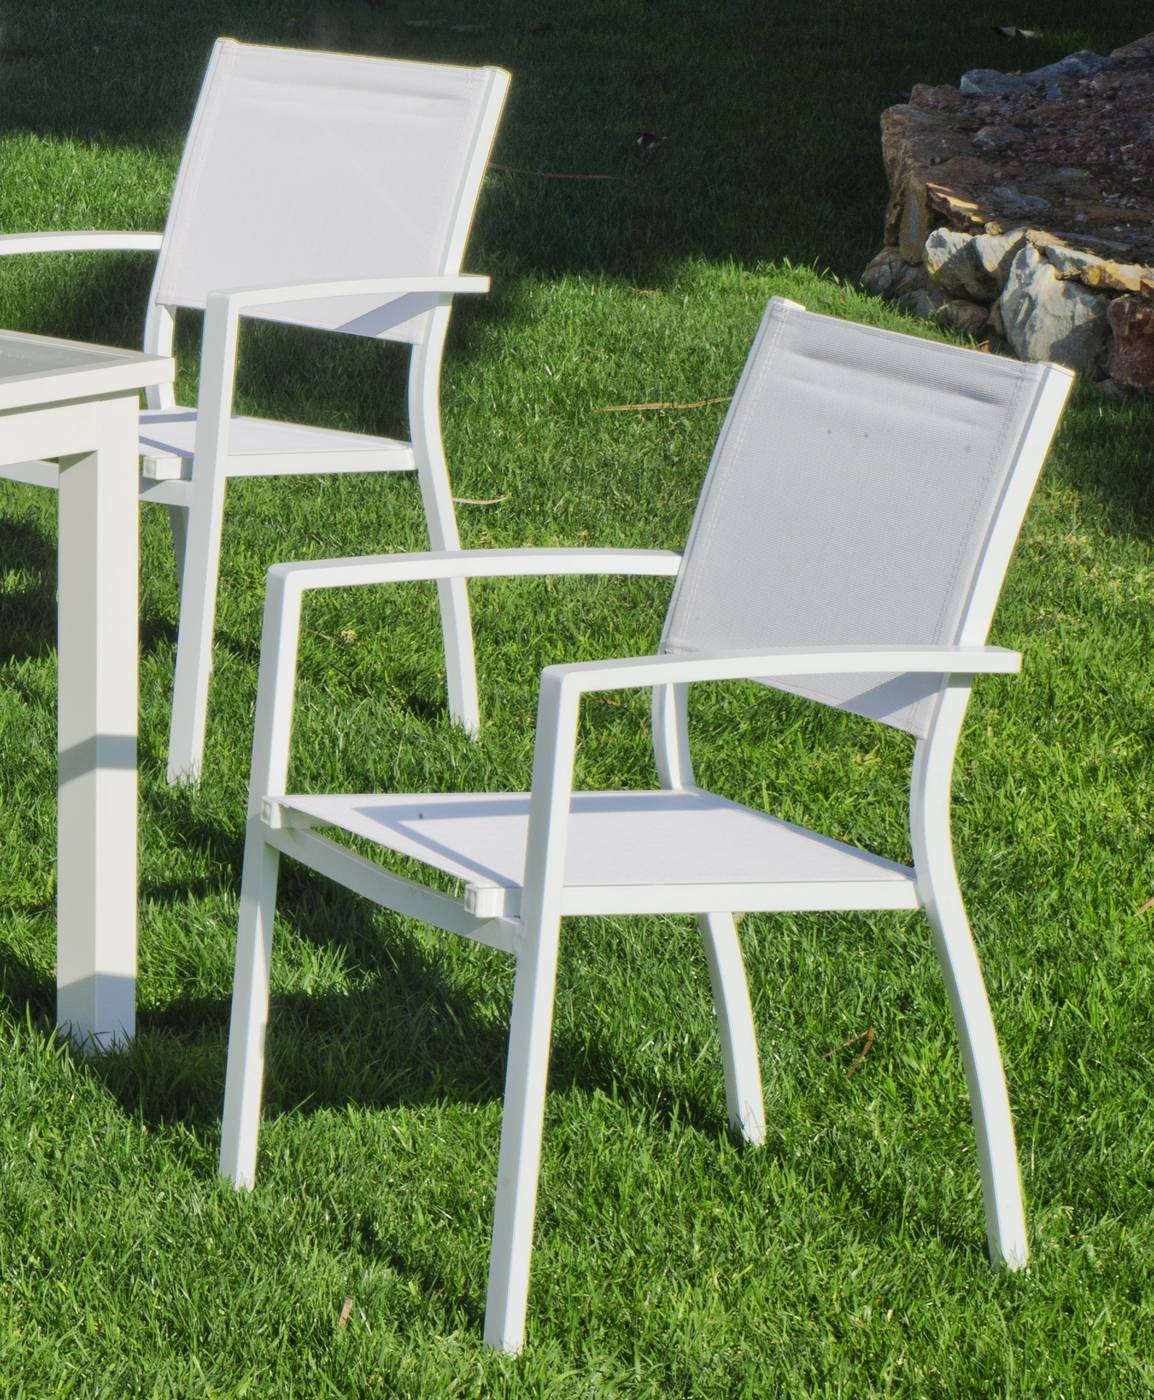 Set Aluminio Acuario-150 - Conjunto aluminio color blanco: mesa de 150 cm. + 4 sillones apilables de alumnio y textilen